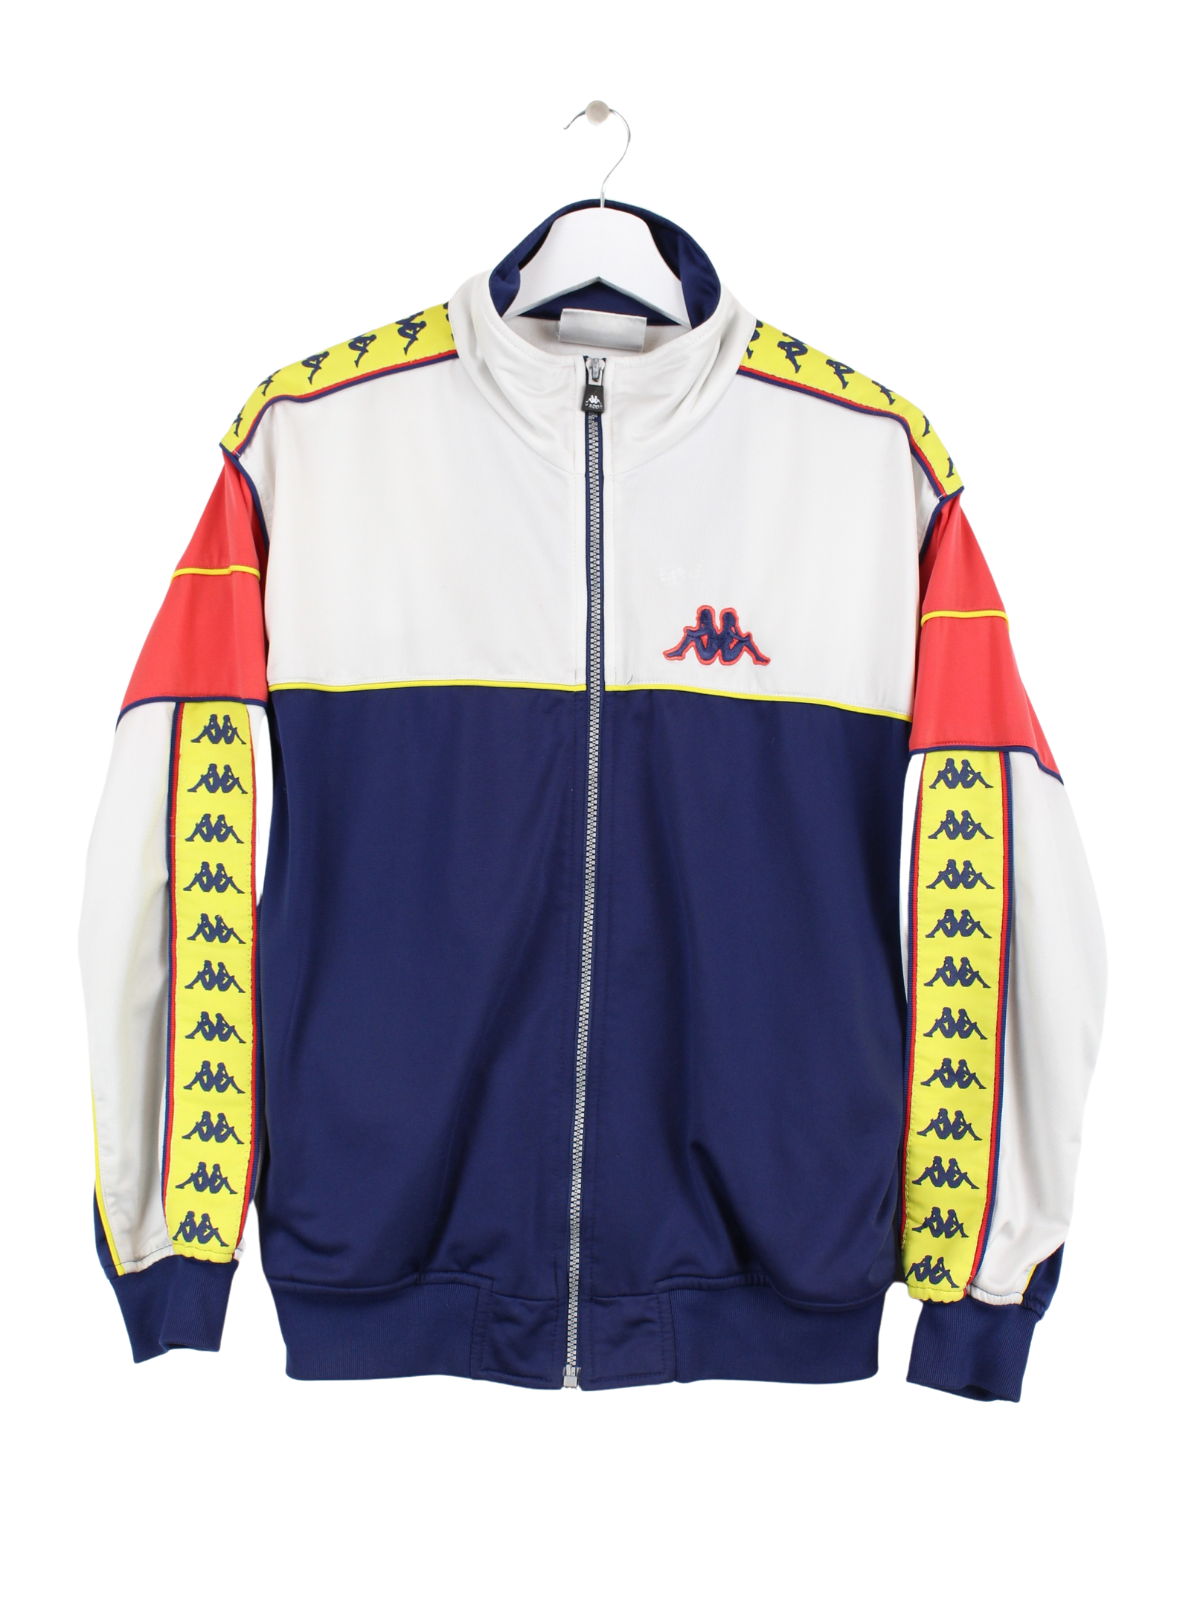 Kappa Training Jacket Multicolored Peeces S –